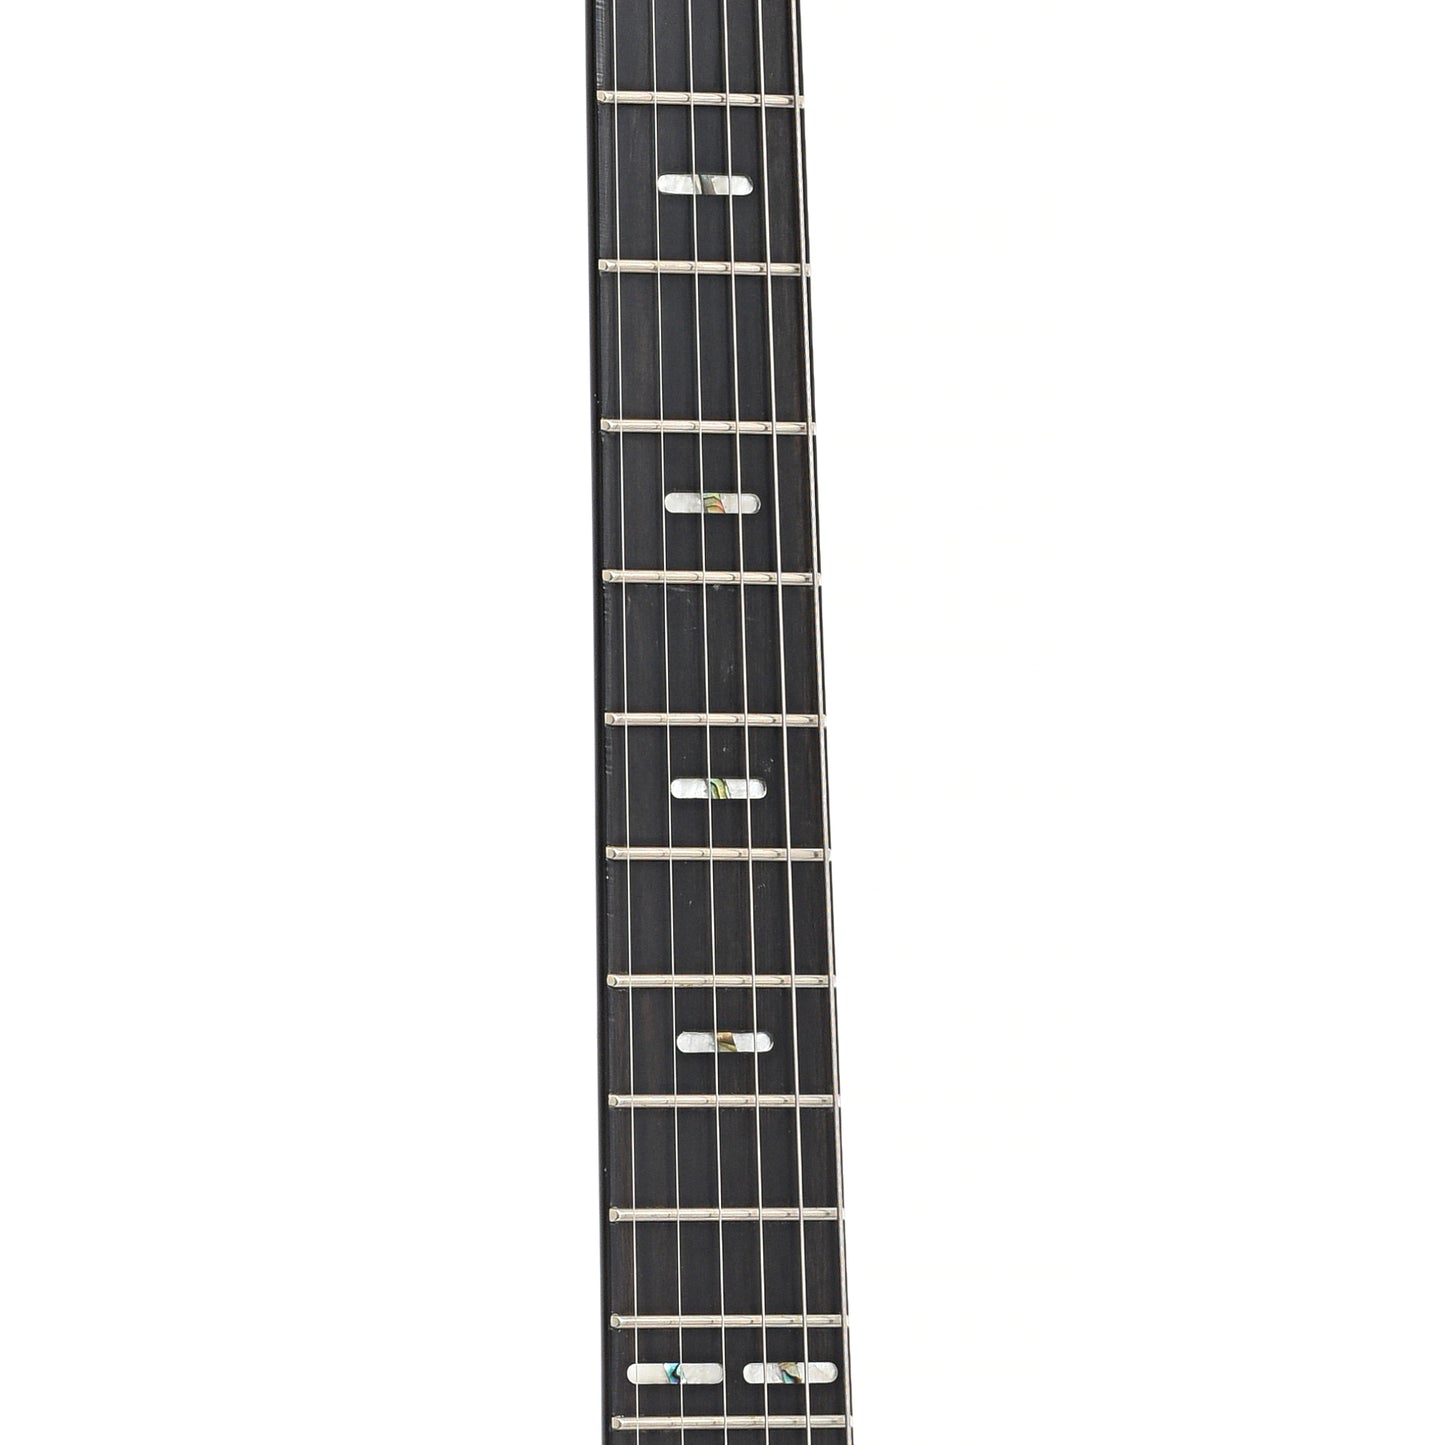 Fretboard of Hagstrom XL-2 LH Electric Guitar (c.2008)